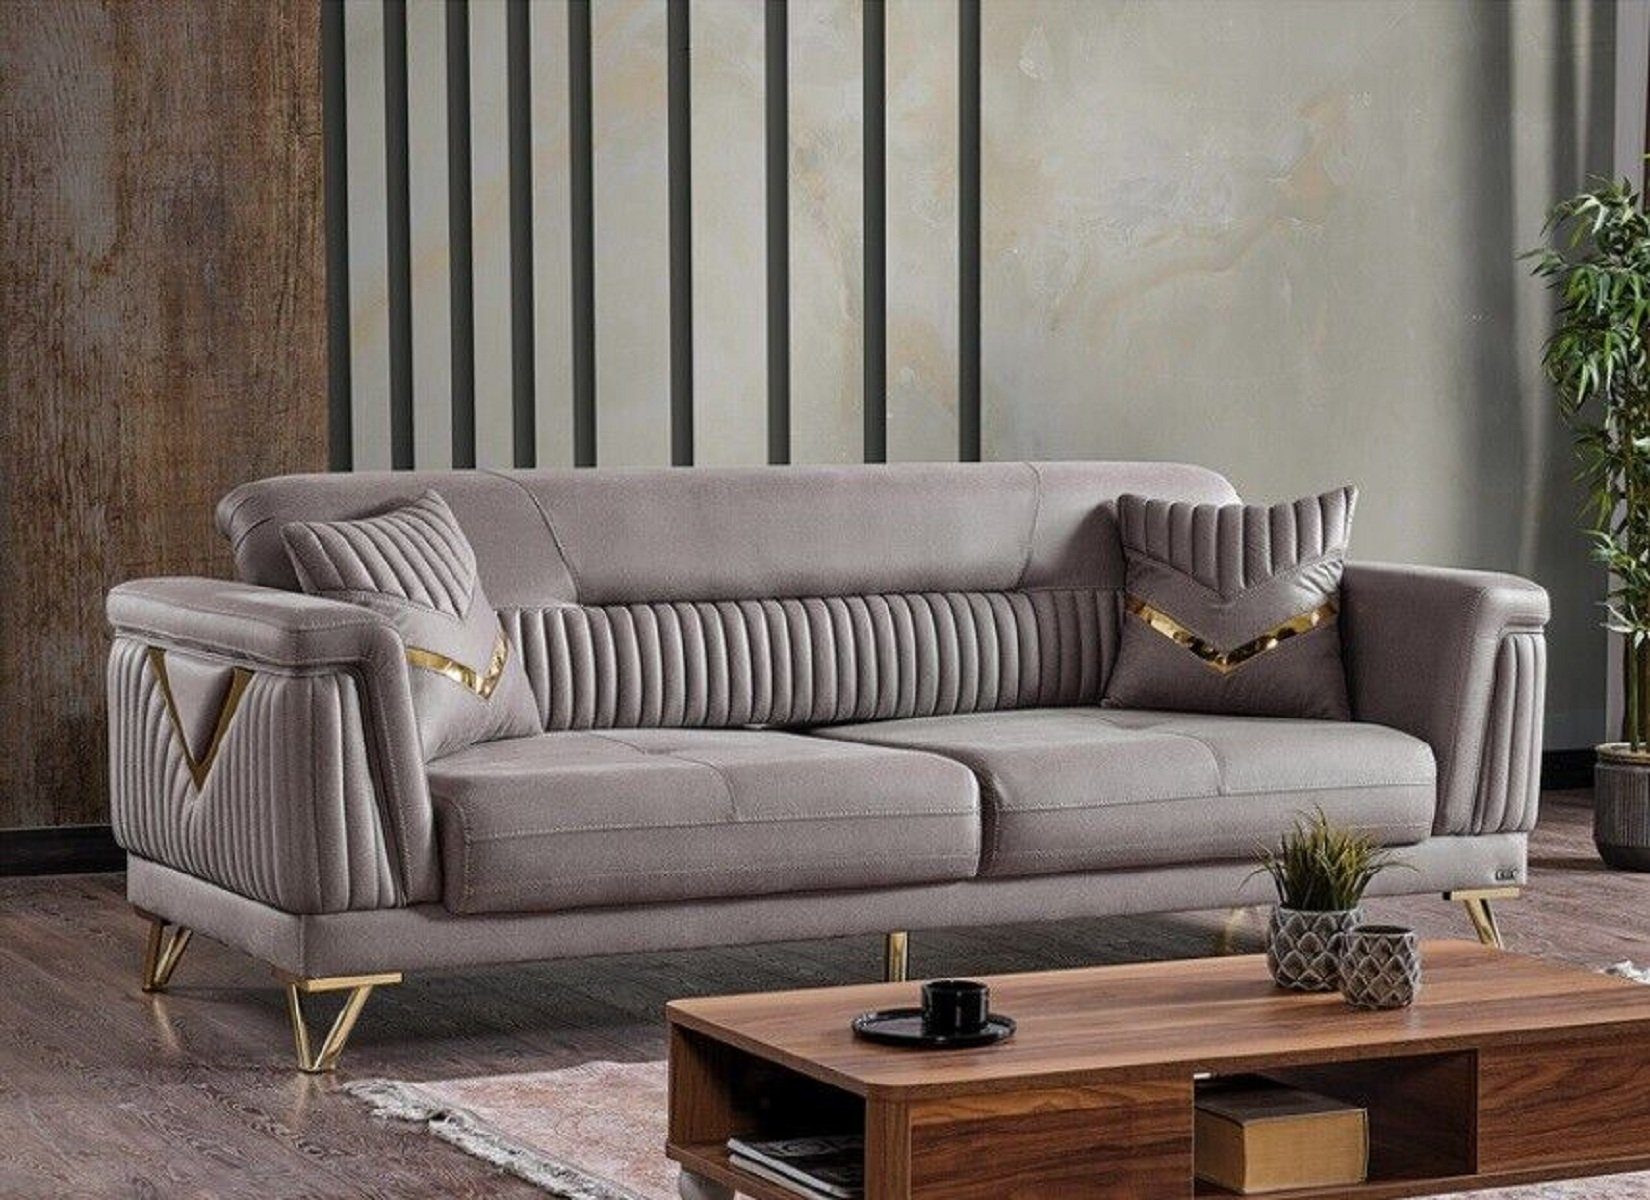 JVmoebel 3-Sitzer Sofa Couch Teile, Polster Couchen Wohnzimmer Textil Sofa, Sofas Luxus Made 3 1 Europa in Sitzer